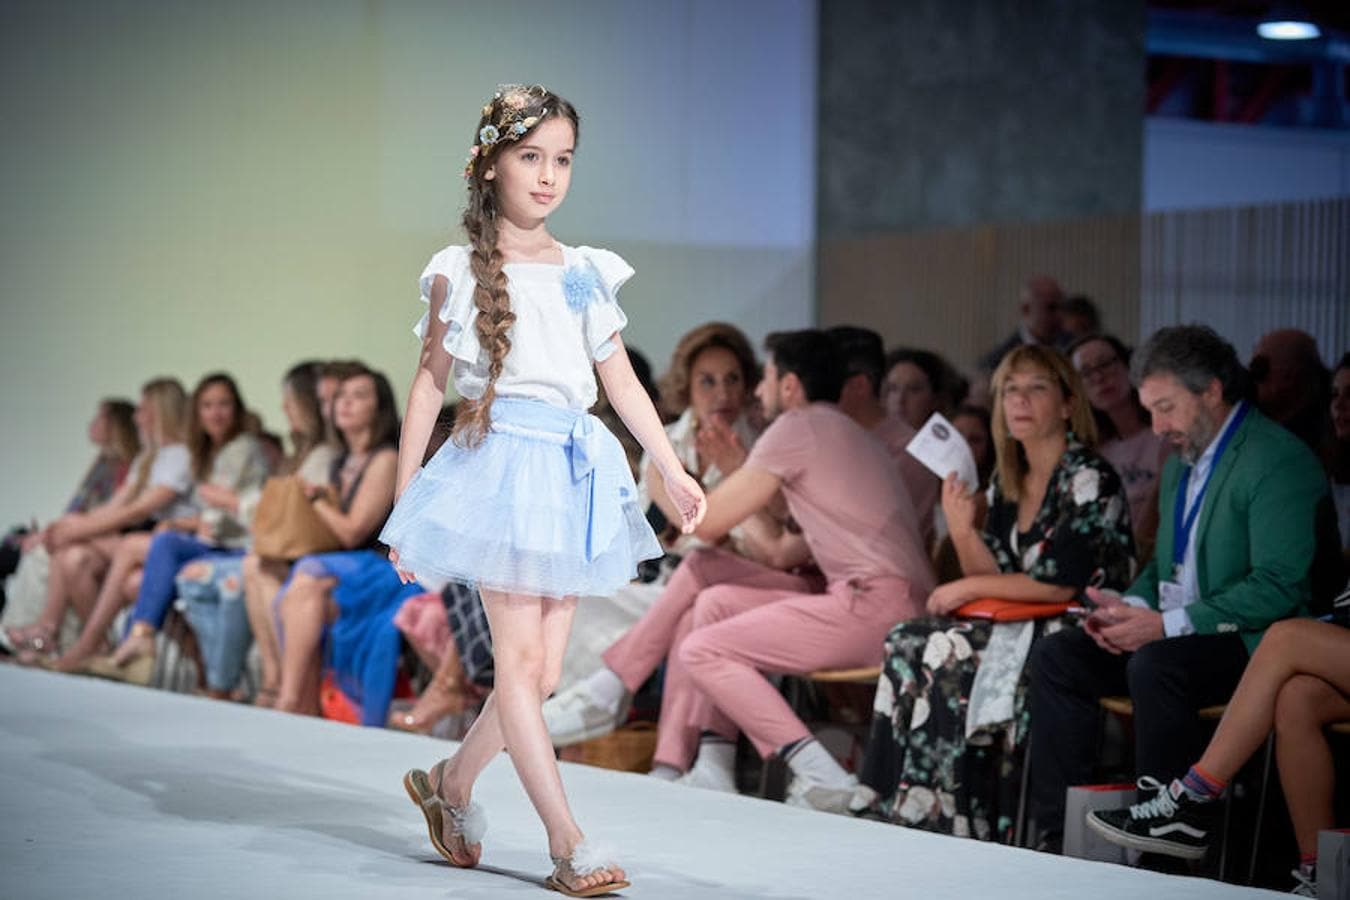 FIMI abrirá sus puertas el próximo viernes 23 de junio en el Pabellón de Cristal de la Casa de Campo de Madrid y hasta el domingo 25 mostrará al mundo las tendencias clave de moda infantil y juvenil para la próxima temporada